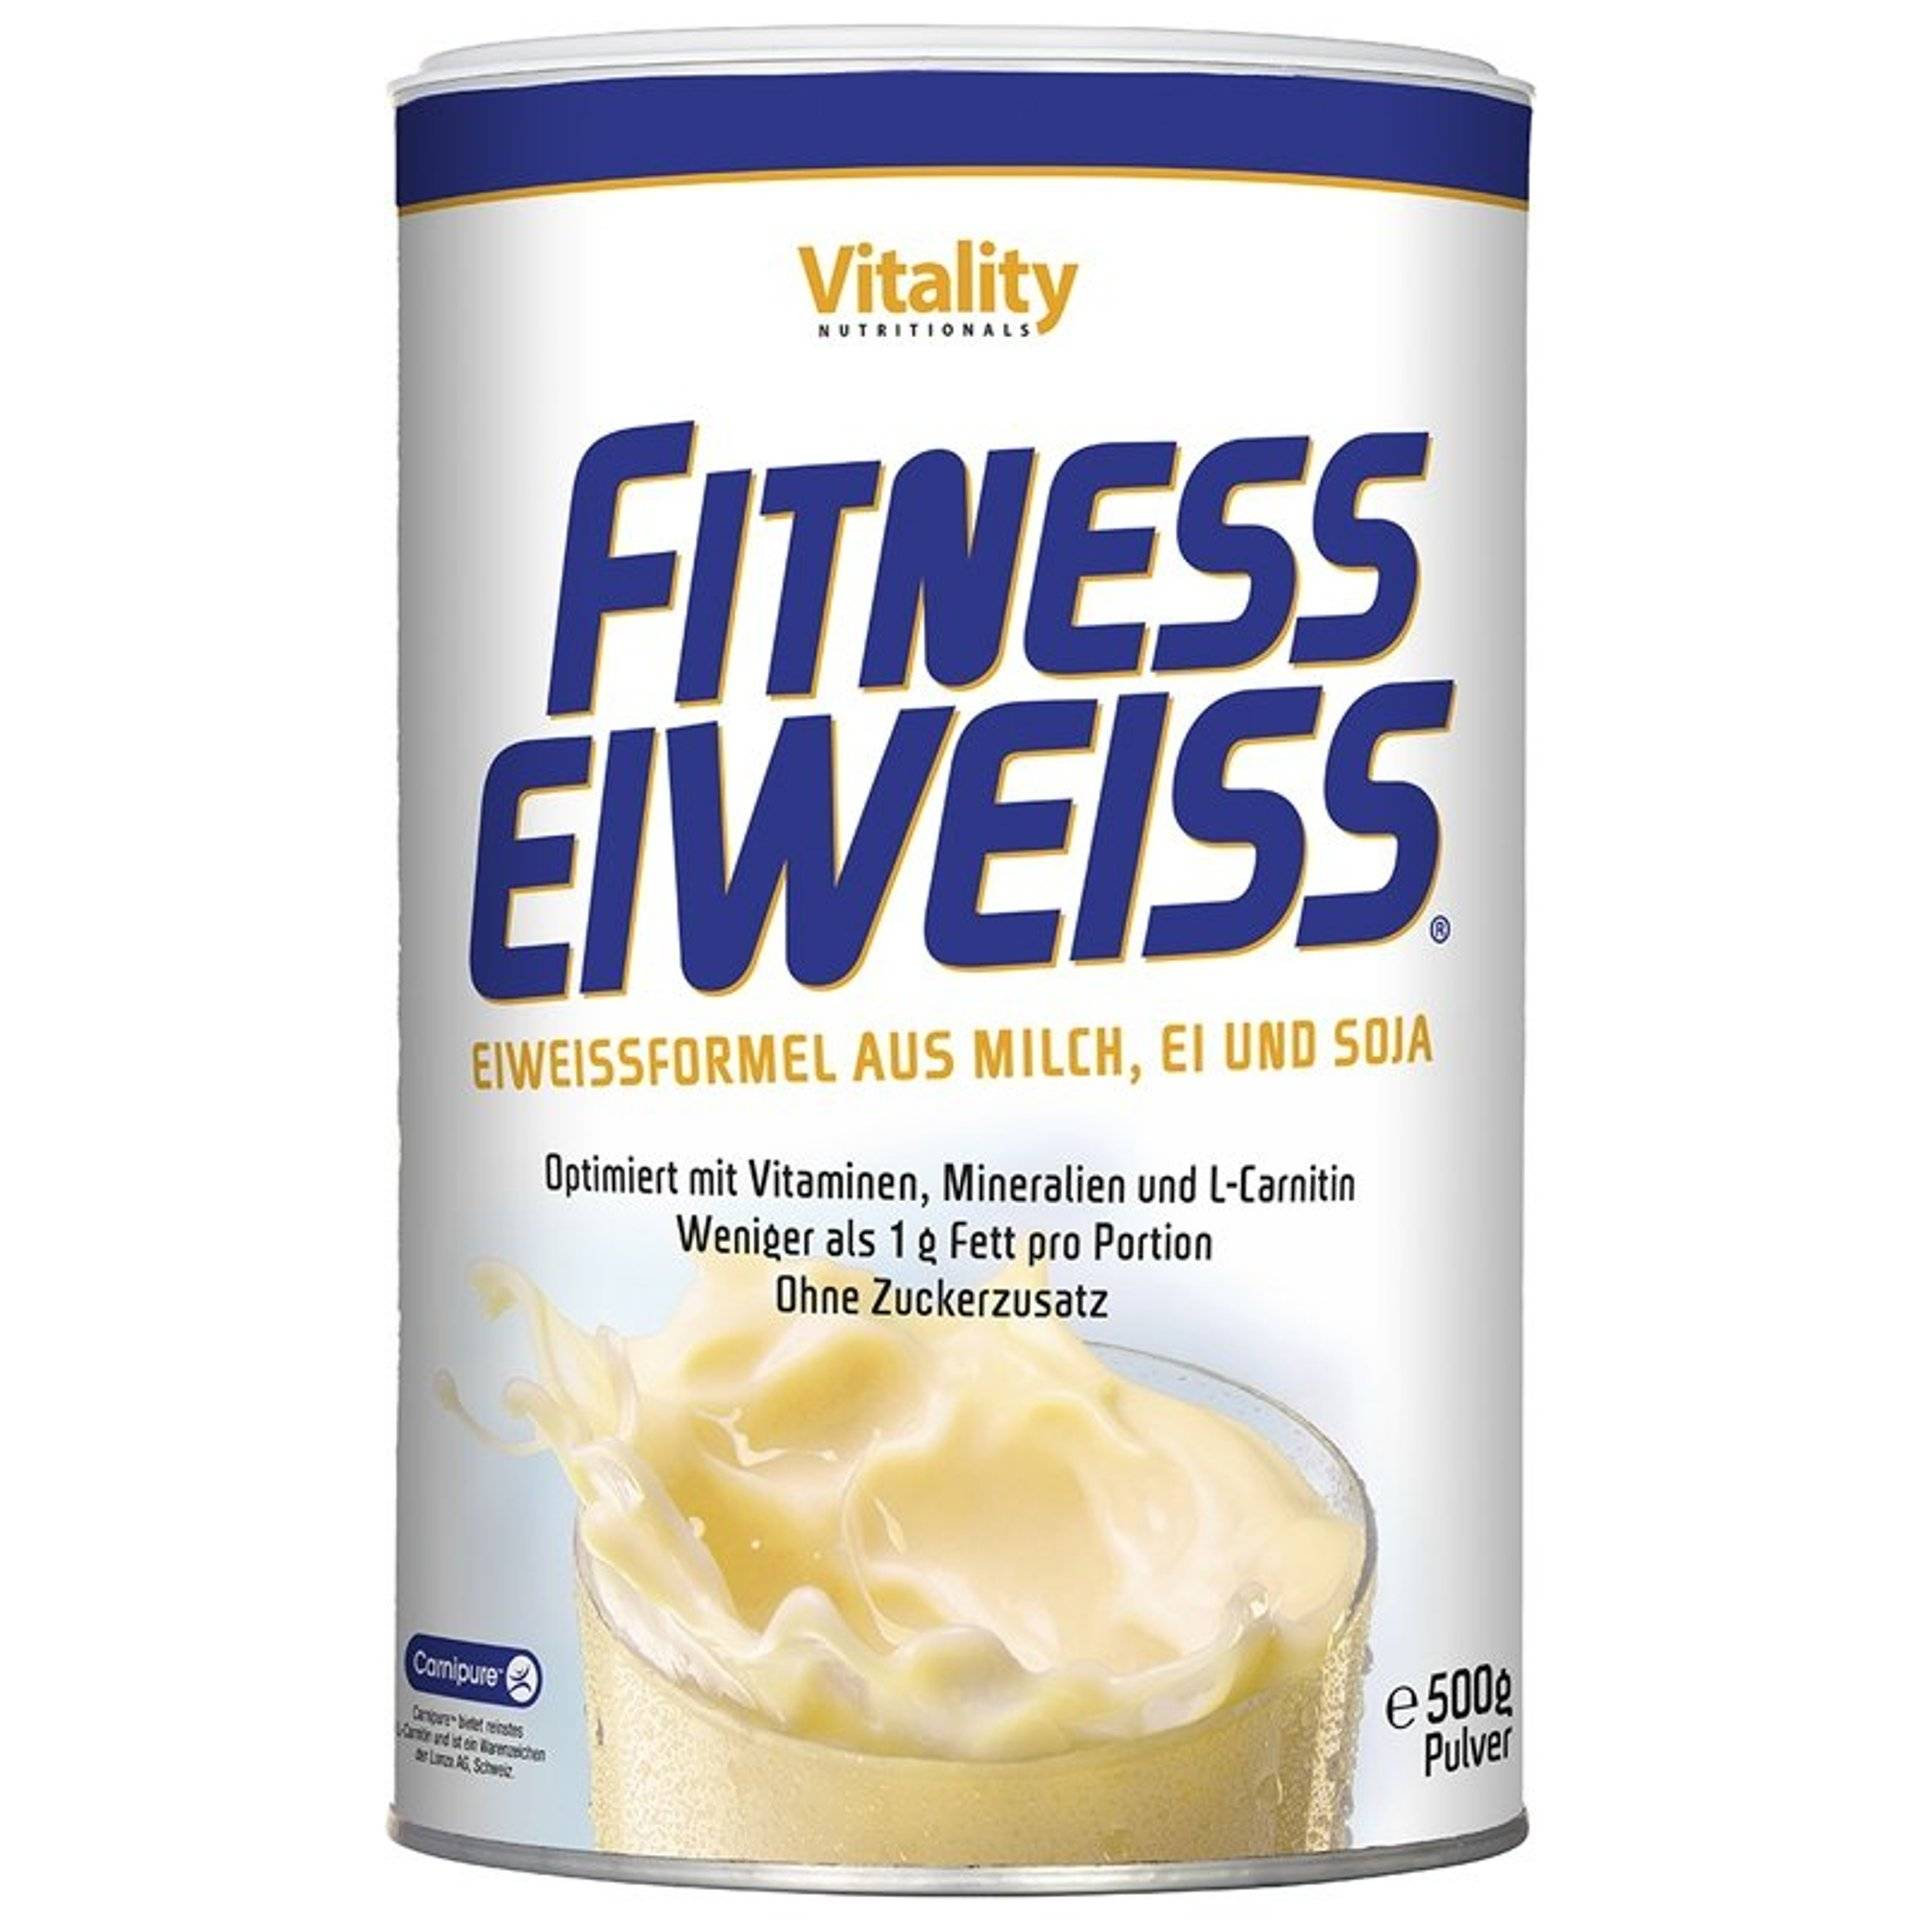 Fitness Eiweiss, naturbelassen